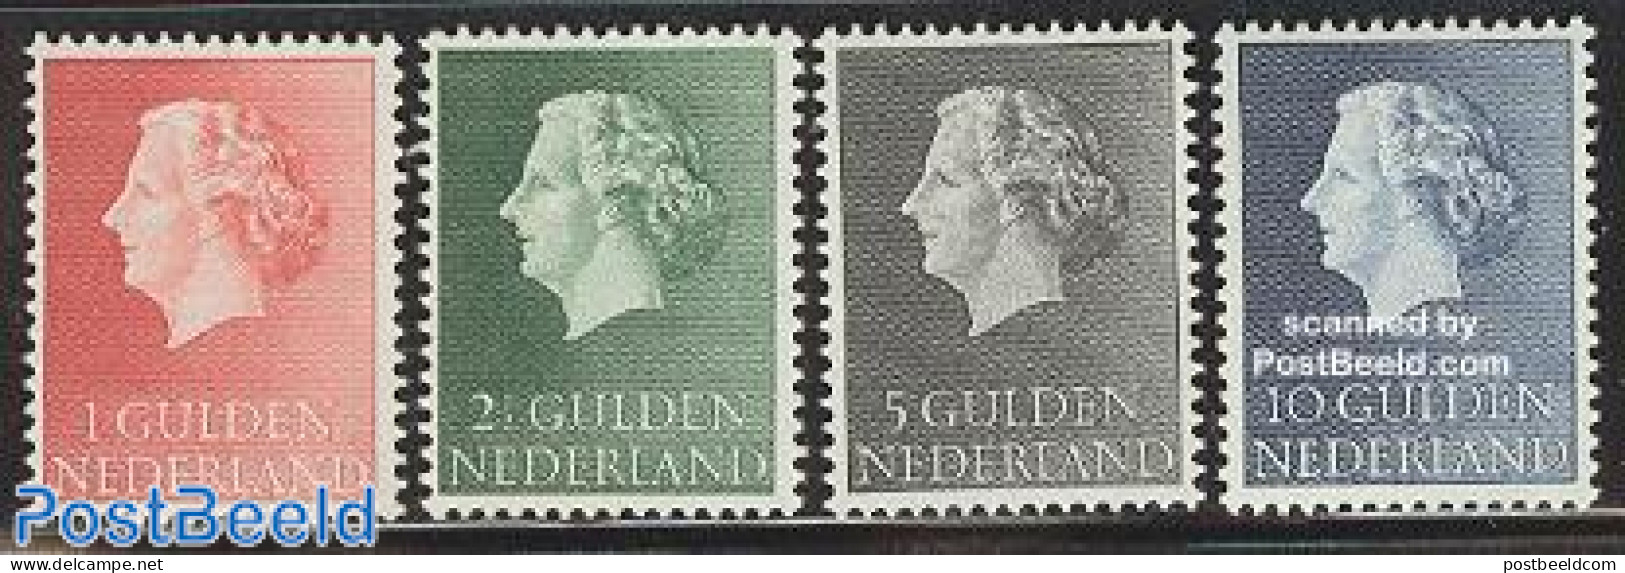 Netherlands 1954 Definitives 4v, Unused (hinged) - Neufs